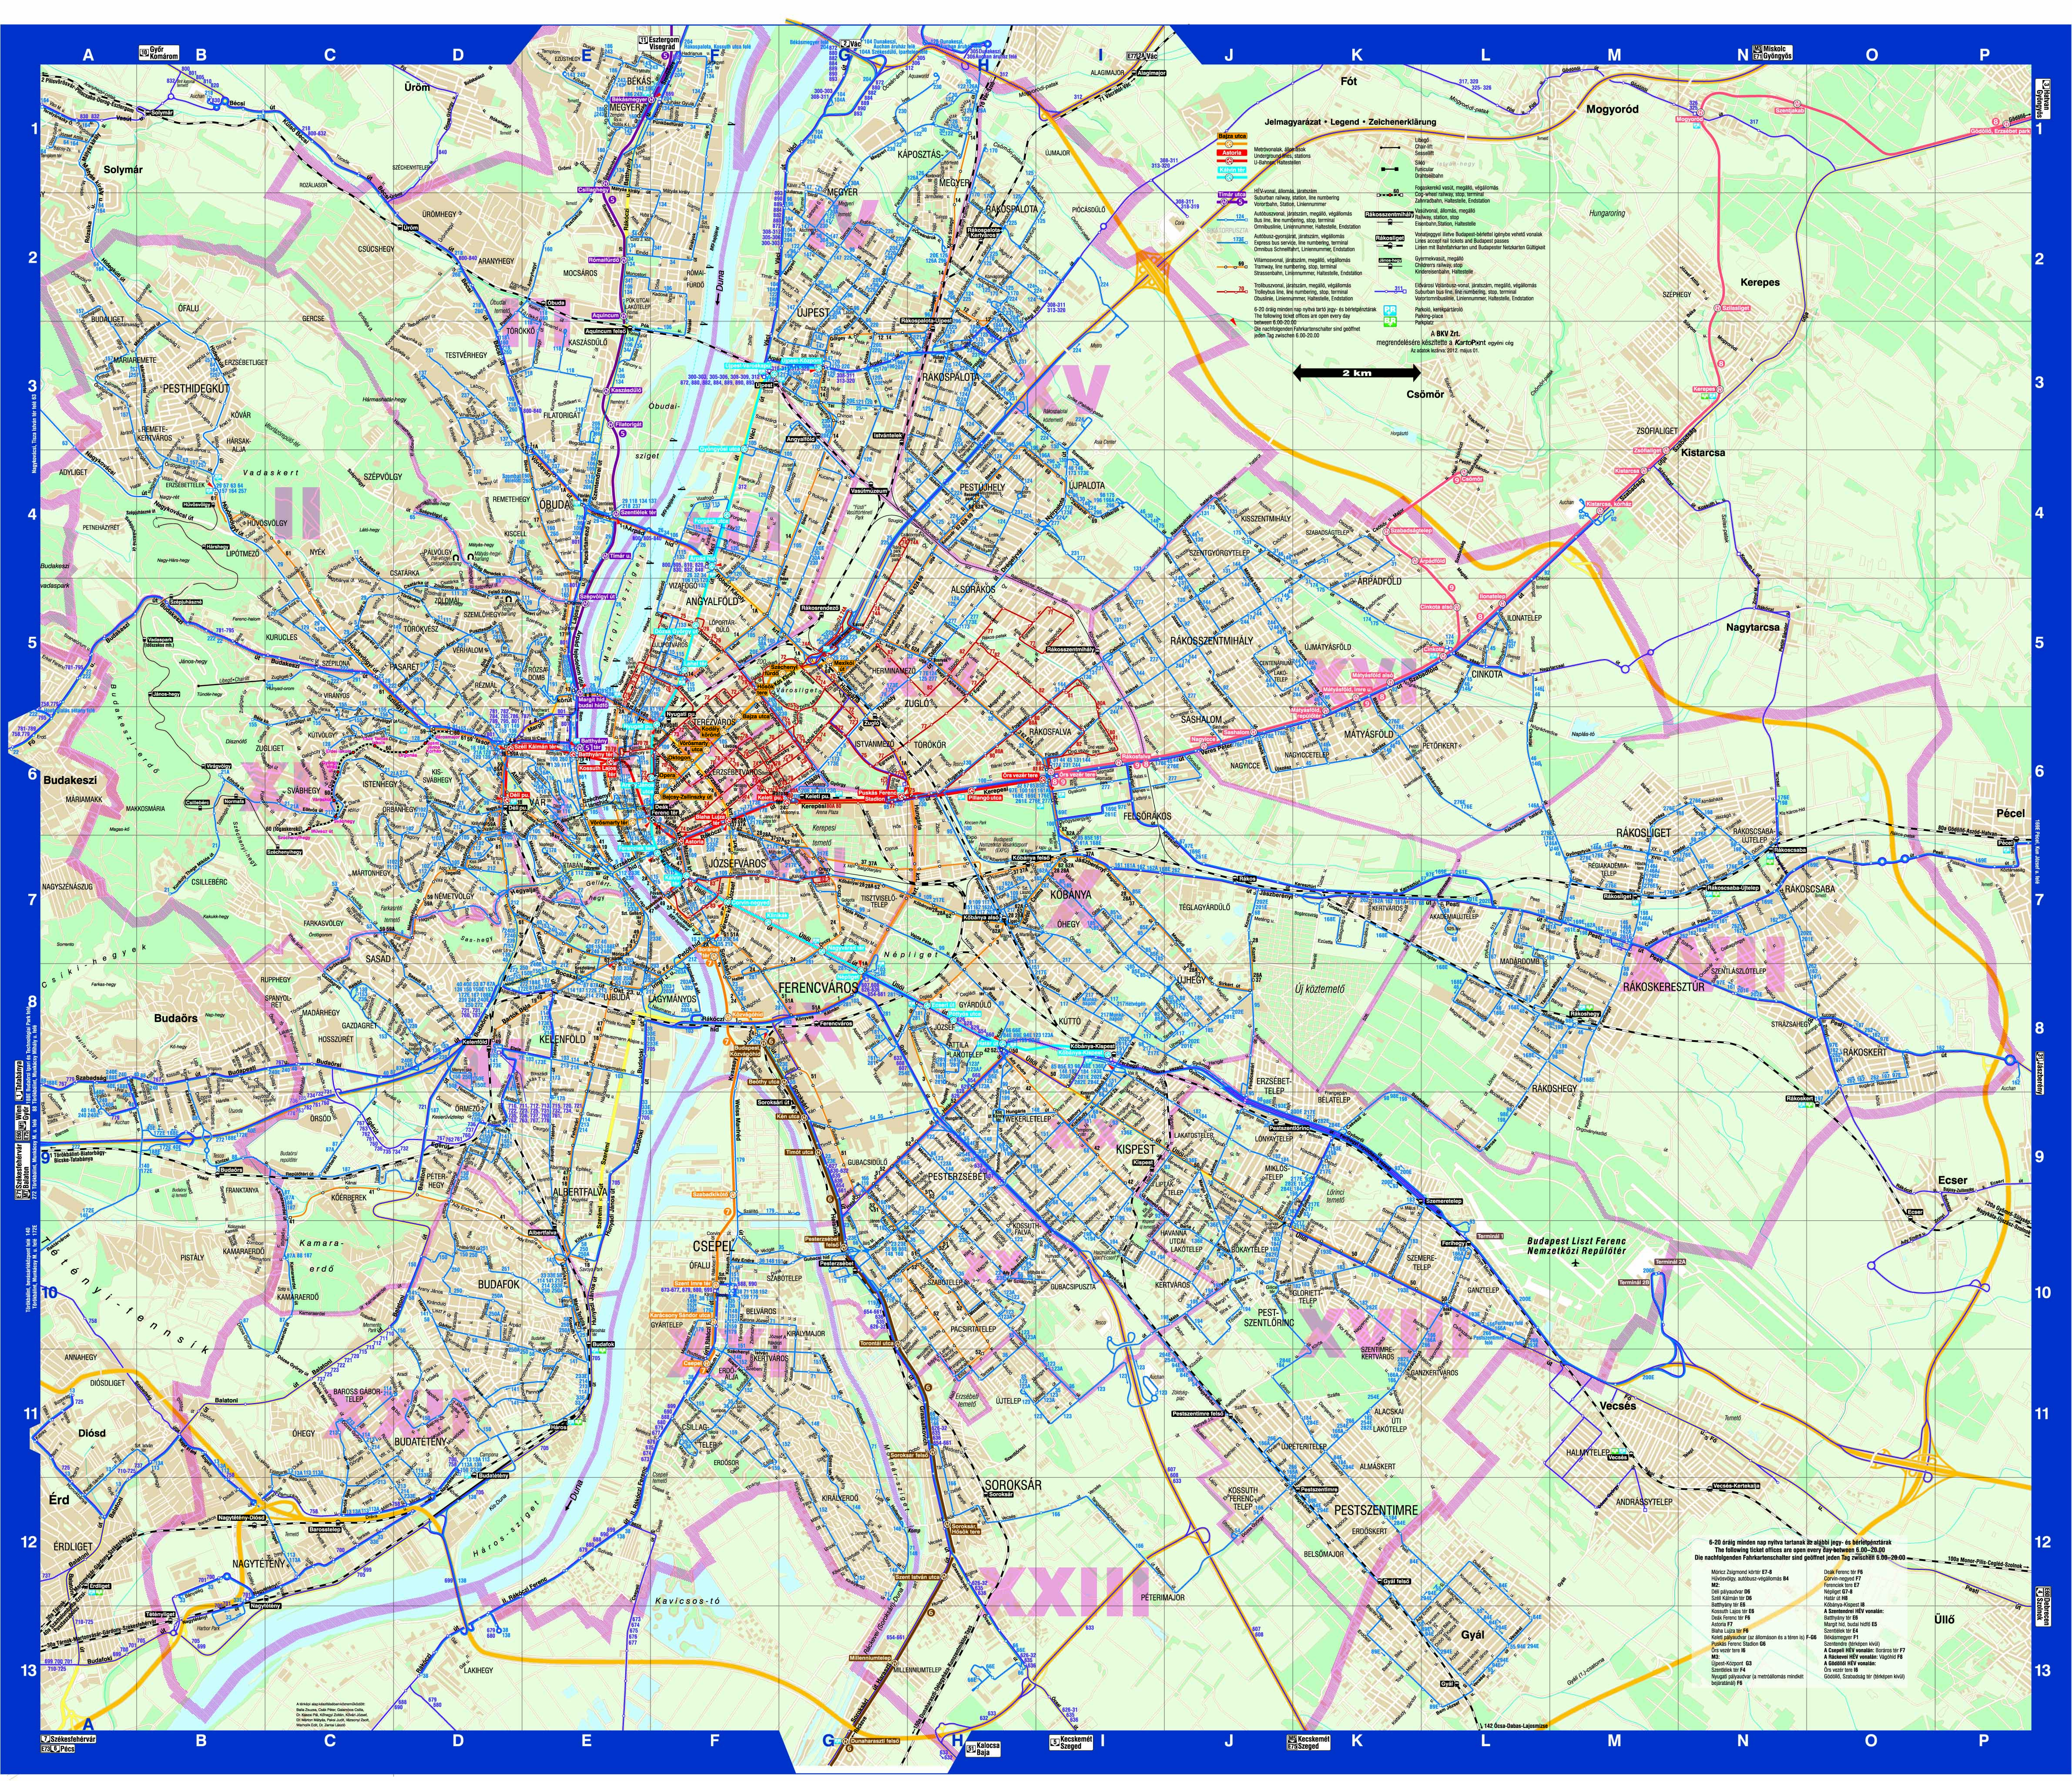 tömegközlekedés budapest térkép Budapest közösségi közlekekedésének utasterheltsége tömegközlekedés budapest térkép